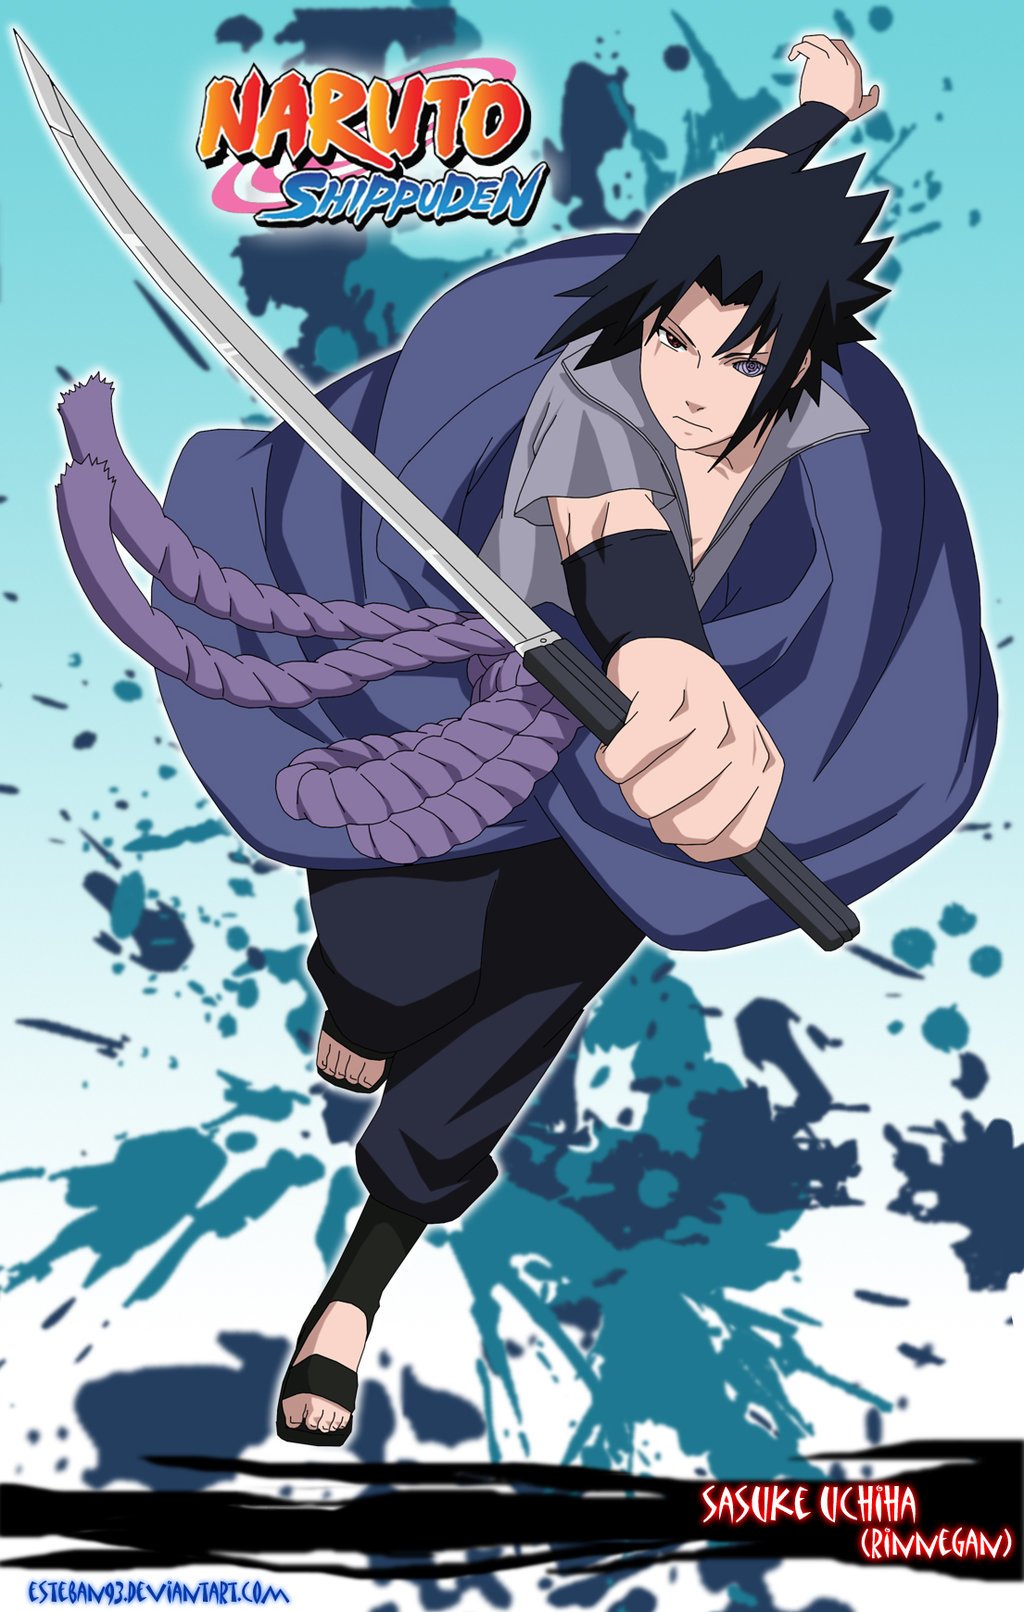 Sasuke Uchiha 00073 rinnegan   Free Naruto Wallpaper